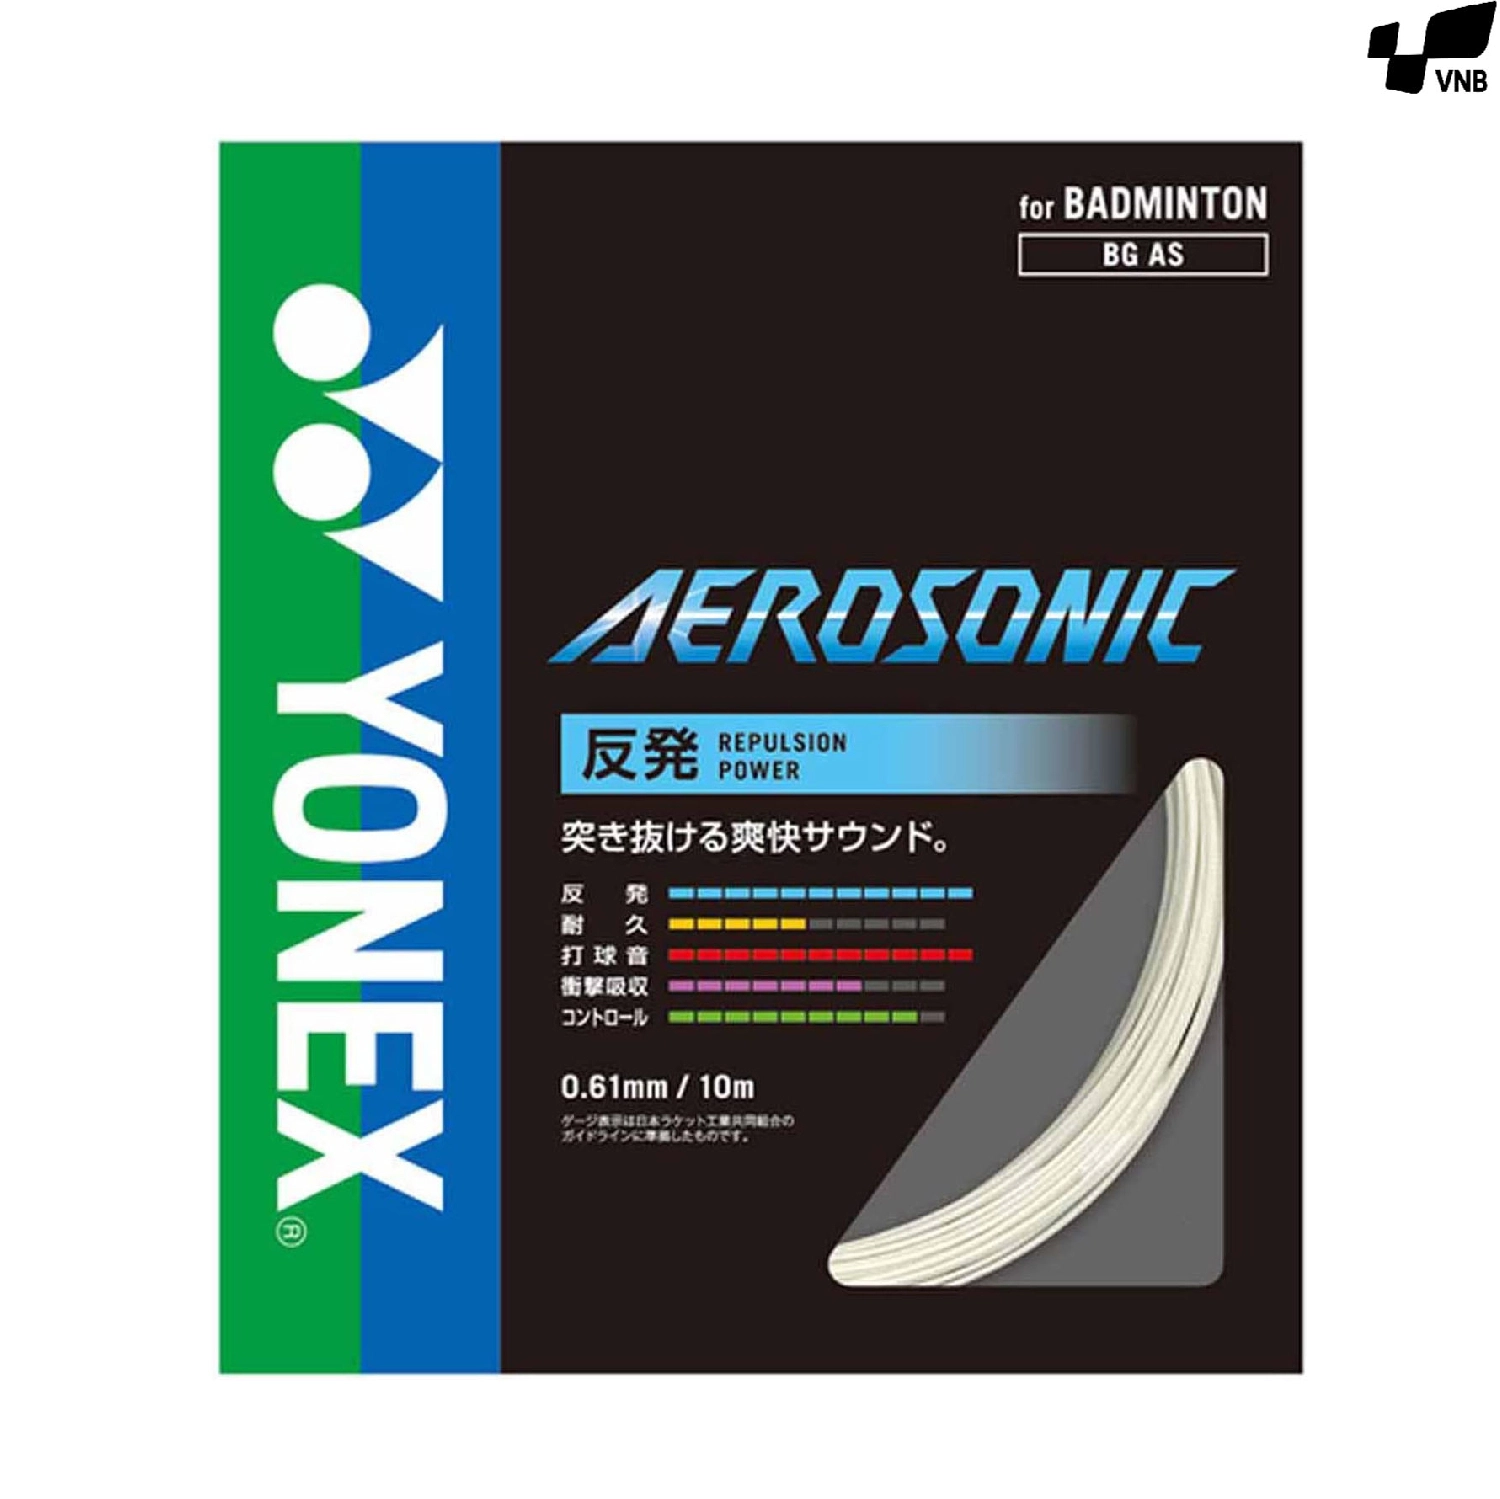 Cước cầu lông nội địa - Yonex Aerosonic